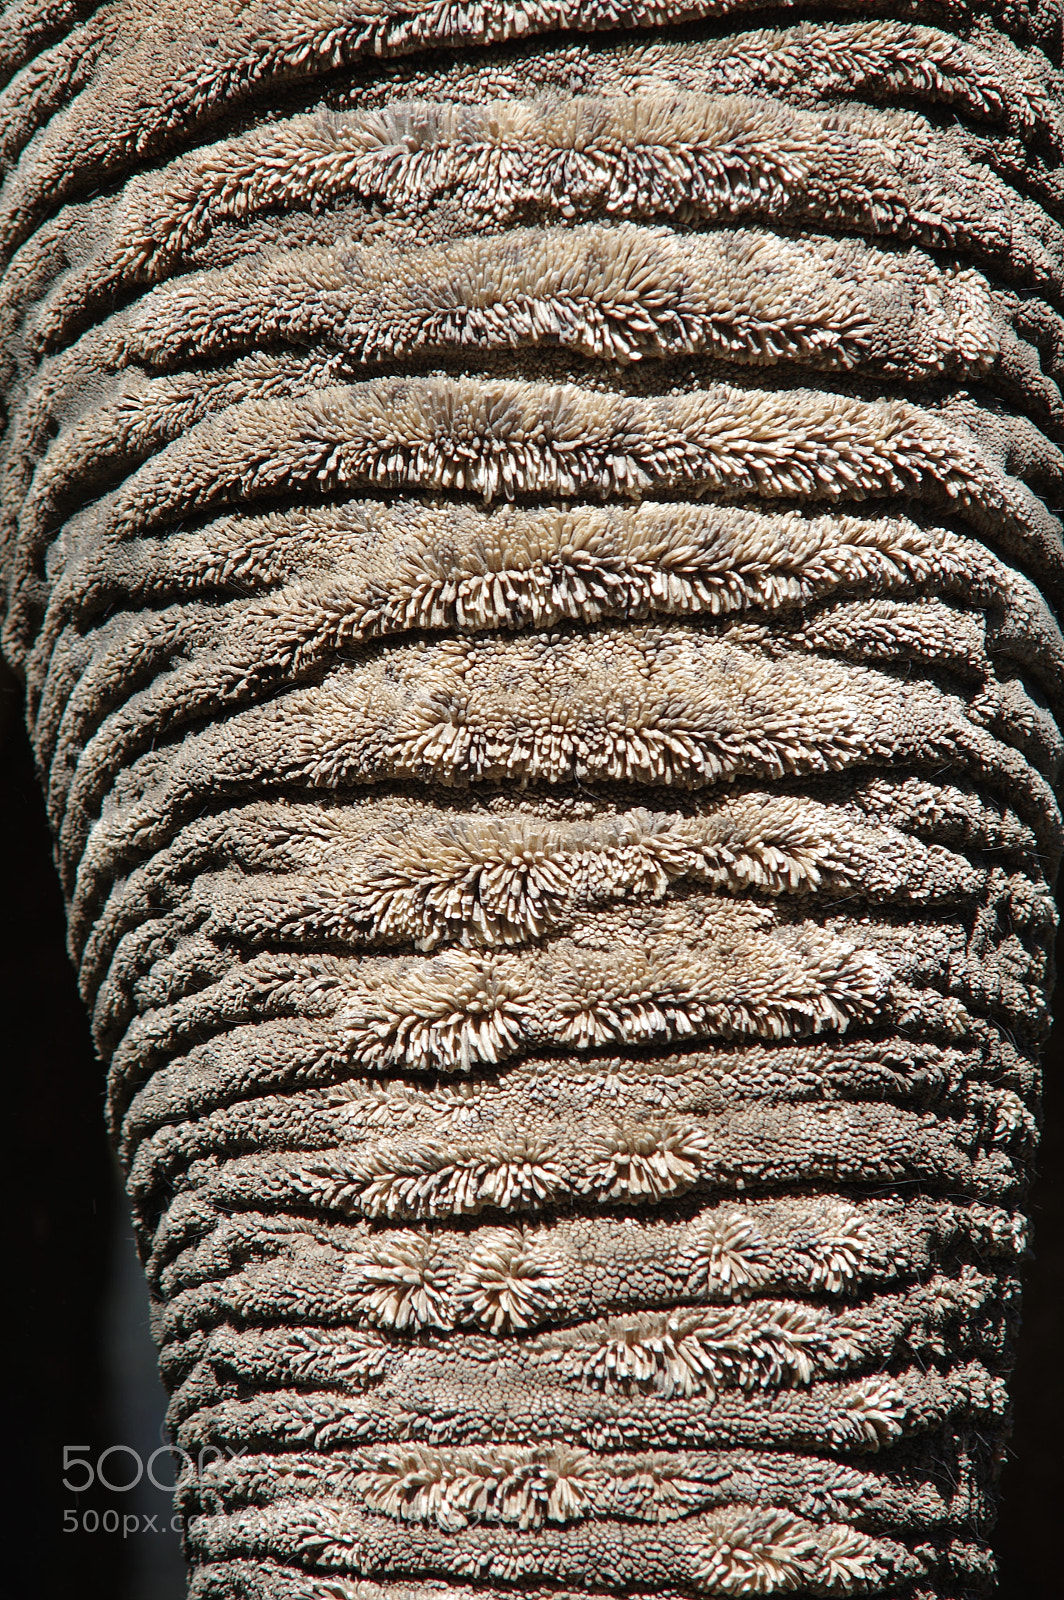 Pentax K-3 sample photo. Trompe d'éléphant photography